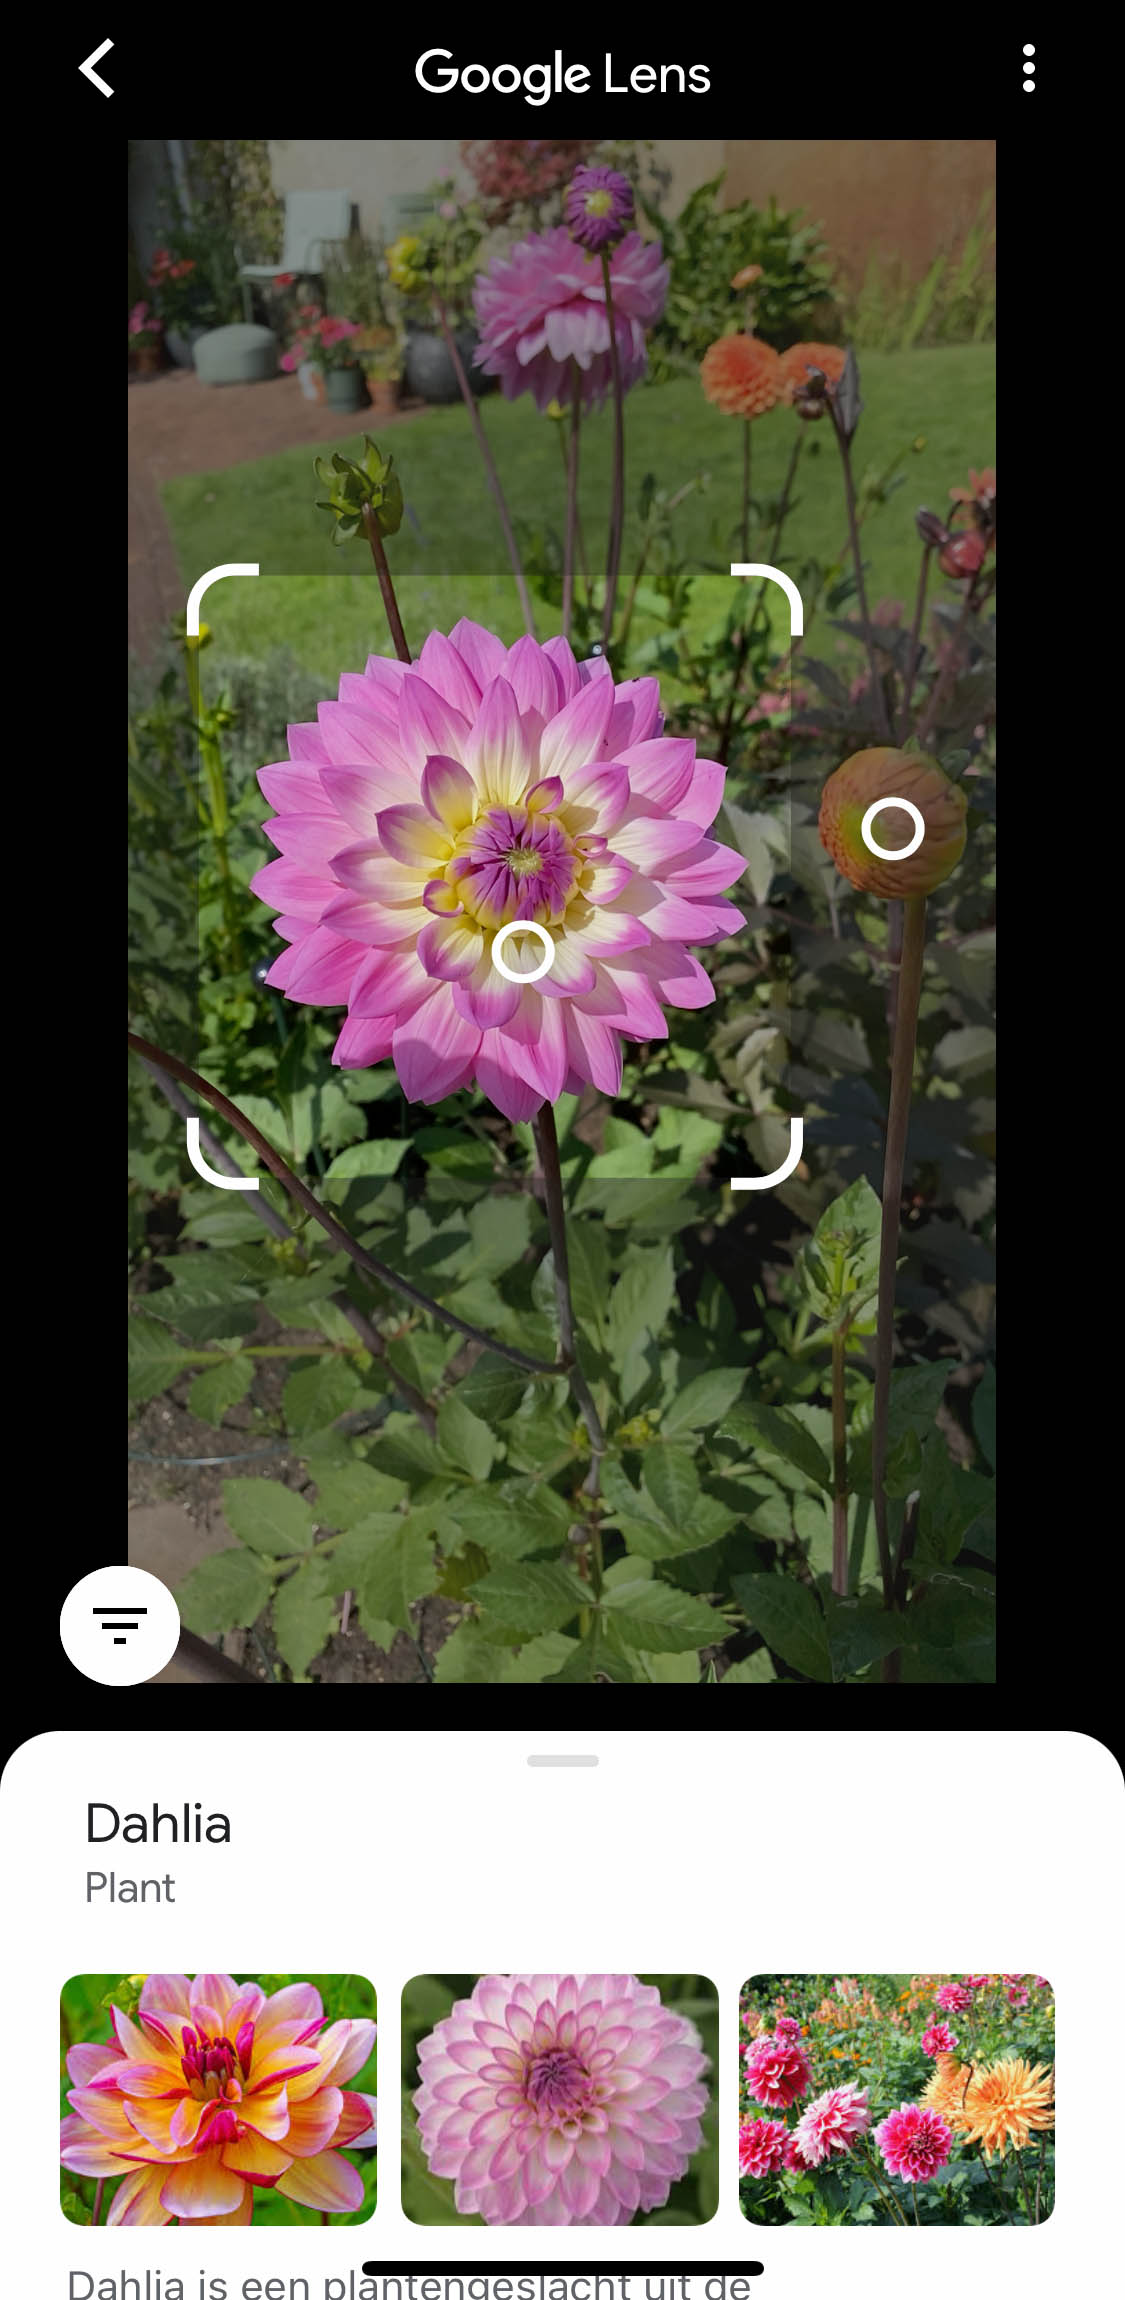 Zoekresultaat door Google Lens: de paarse bloem is geselecteerd: het is een Dahlia